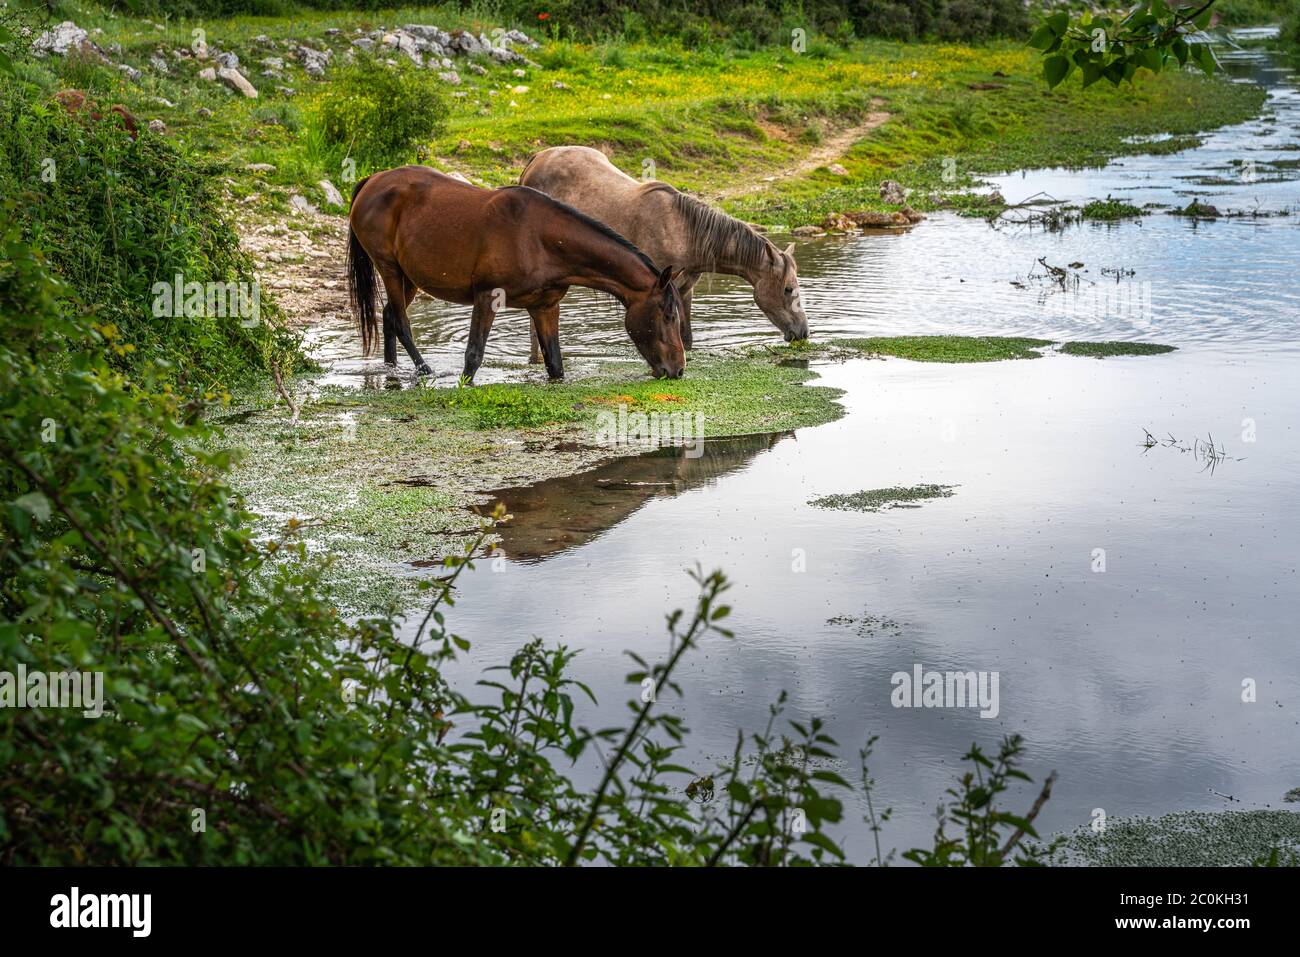 Les chevaux sauvages reproduisent l'eau potable de Pentra dans le ruisseau Zittola. Montenero Valcocchiara, région de Molise, Italie, Europe Banque D'Images